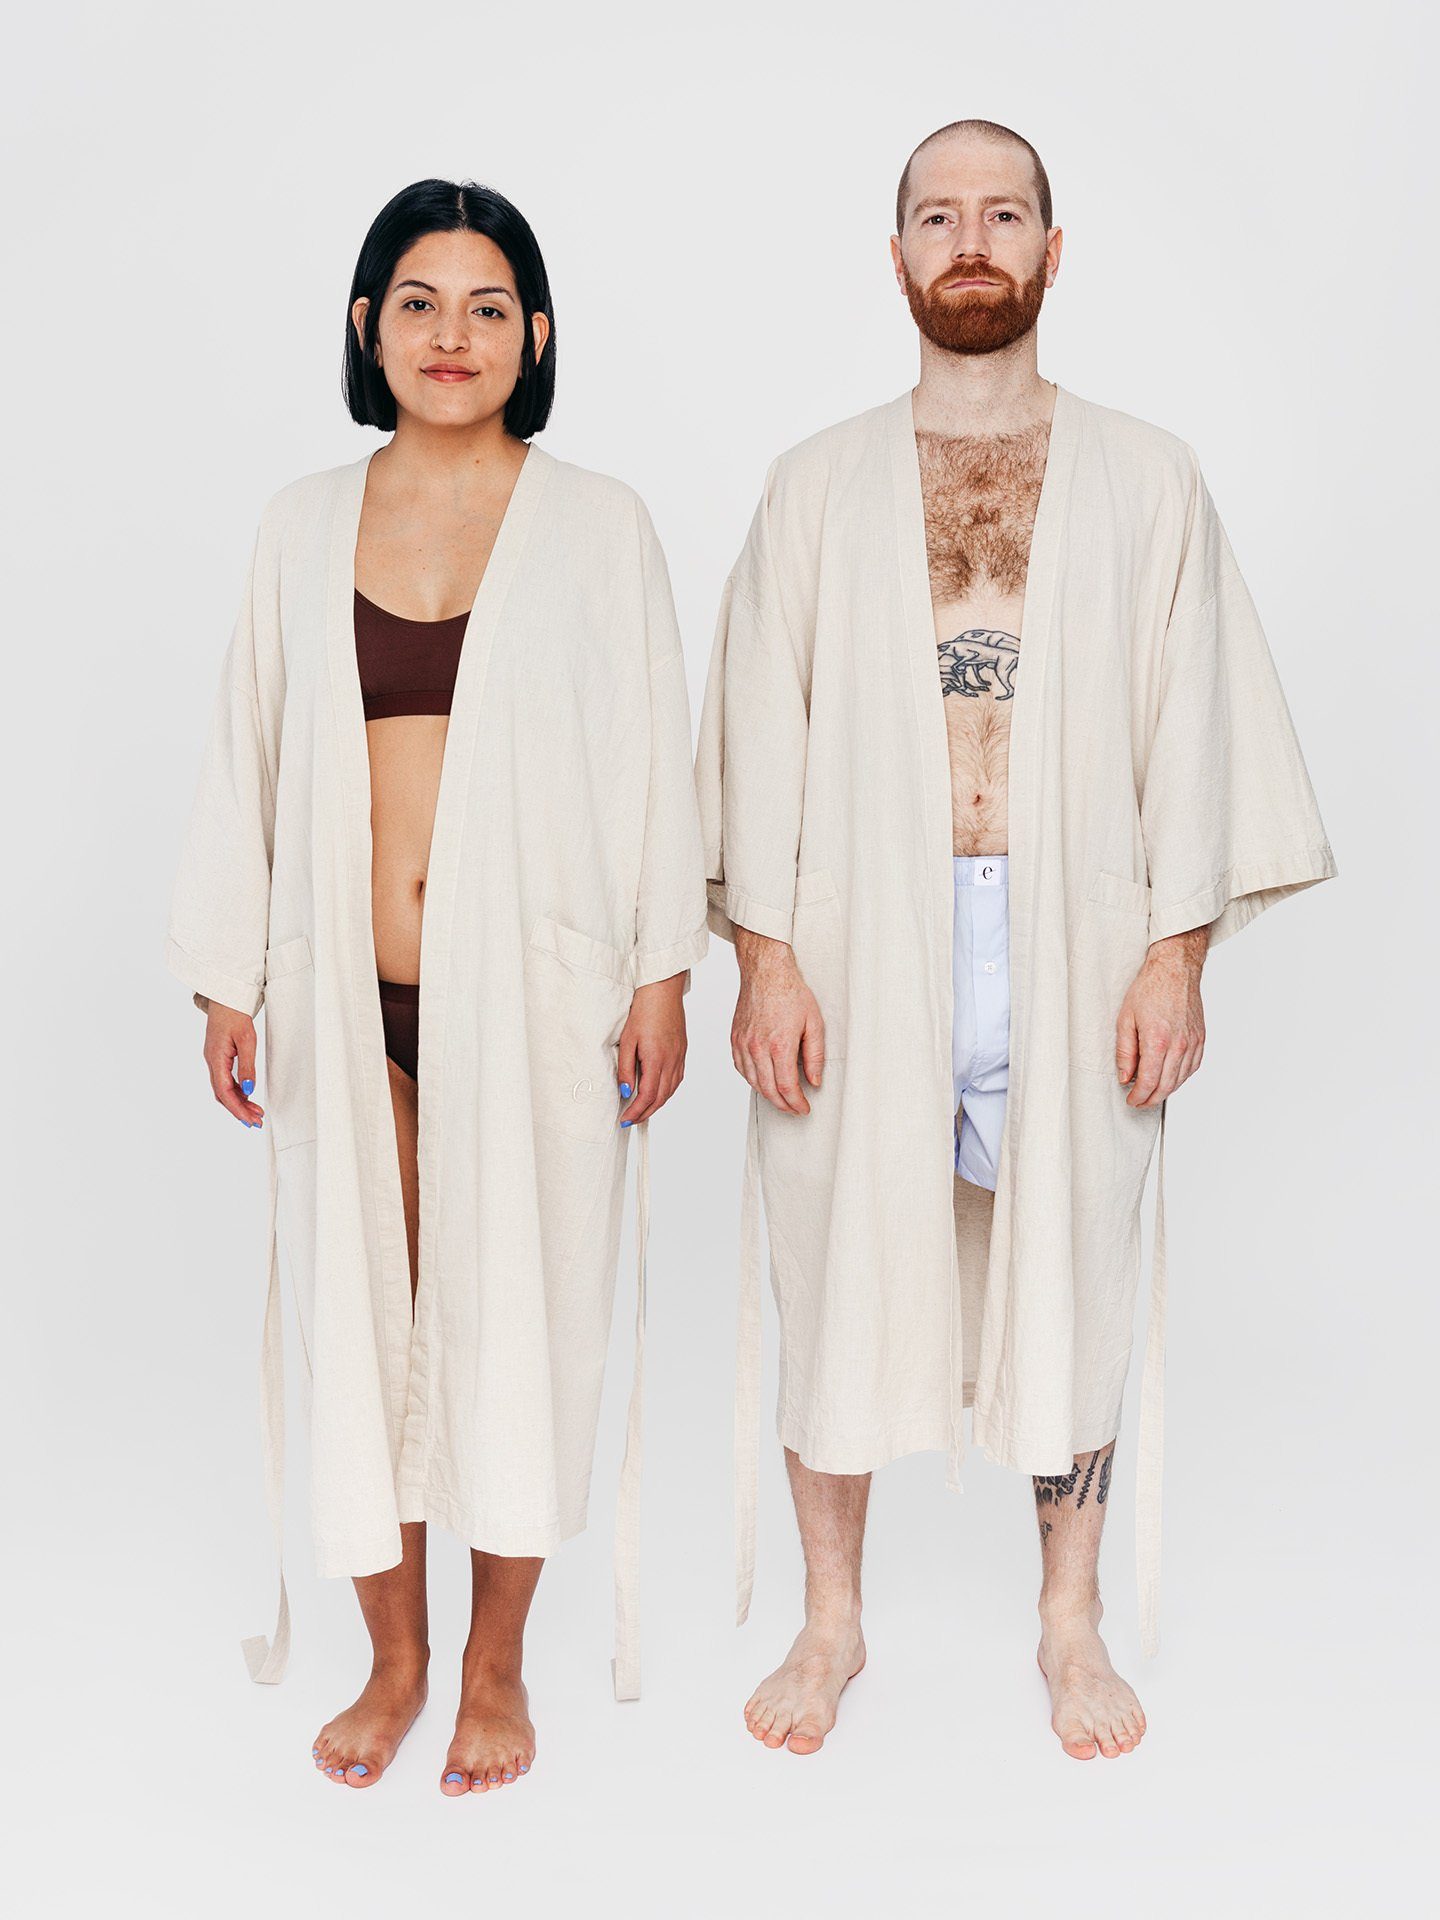 Textil Langform, Erlich Baumwolle-Leinen-Mischung Kimono, Kimono